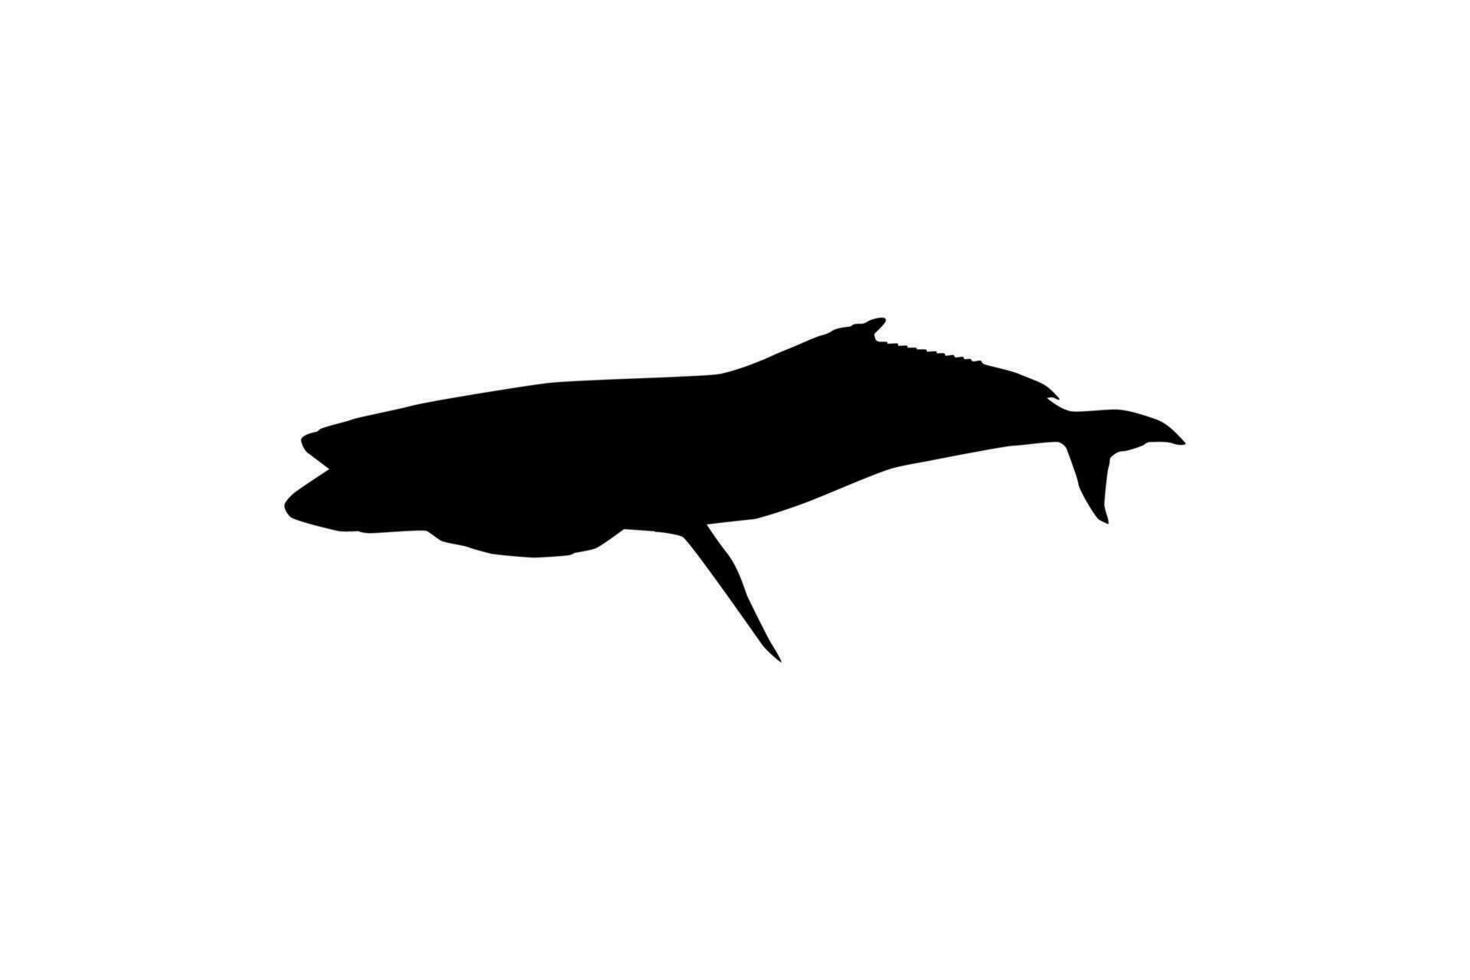 cobia pescado silueta, además conocido como negro pez real, negro salmón, abadejo, pez limón, cangrejero, pródigo hijo, bacalao, y negro bonito. vector ilustración